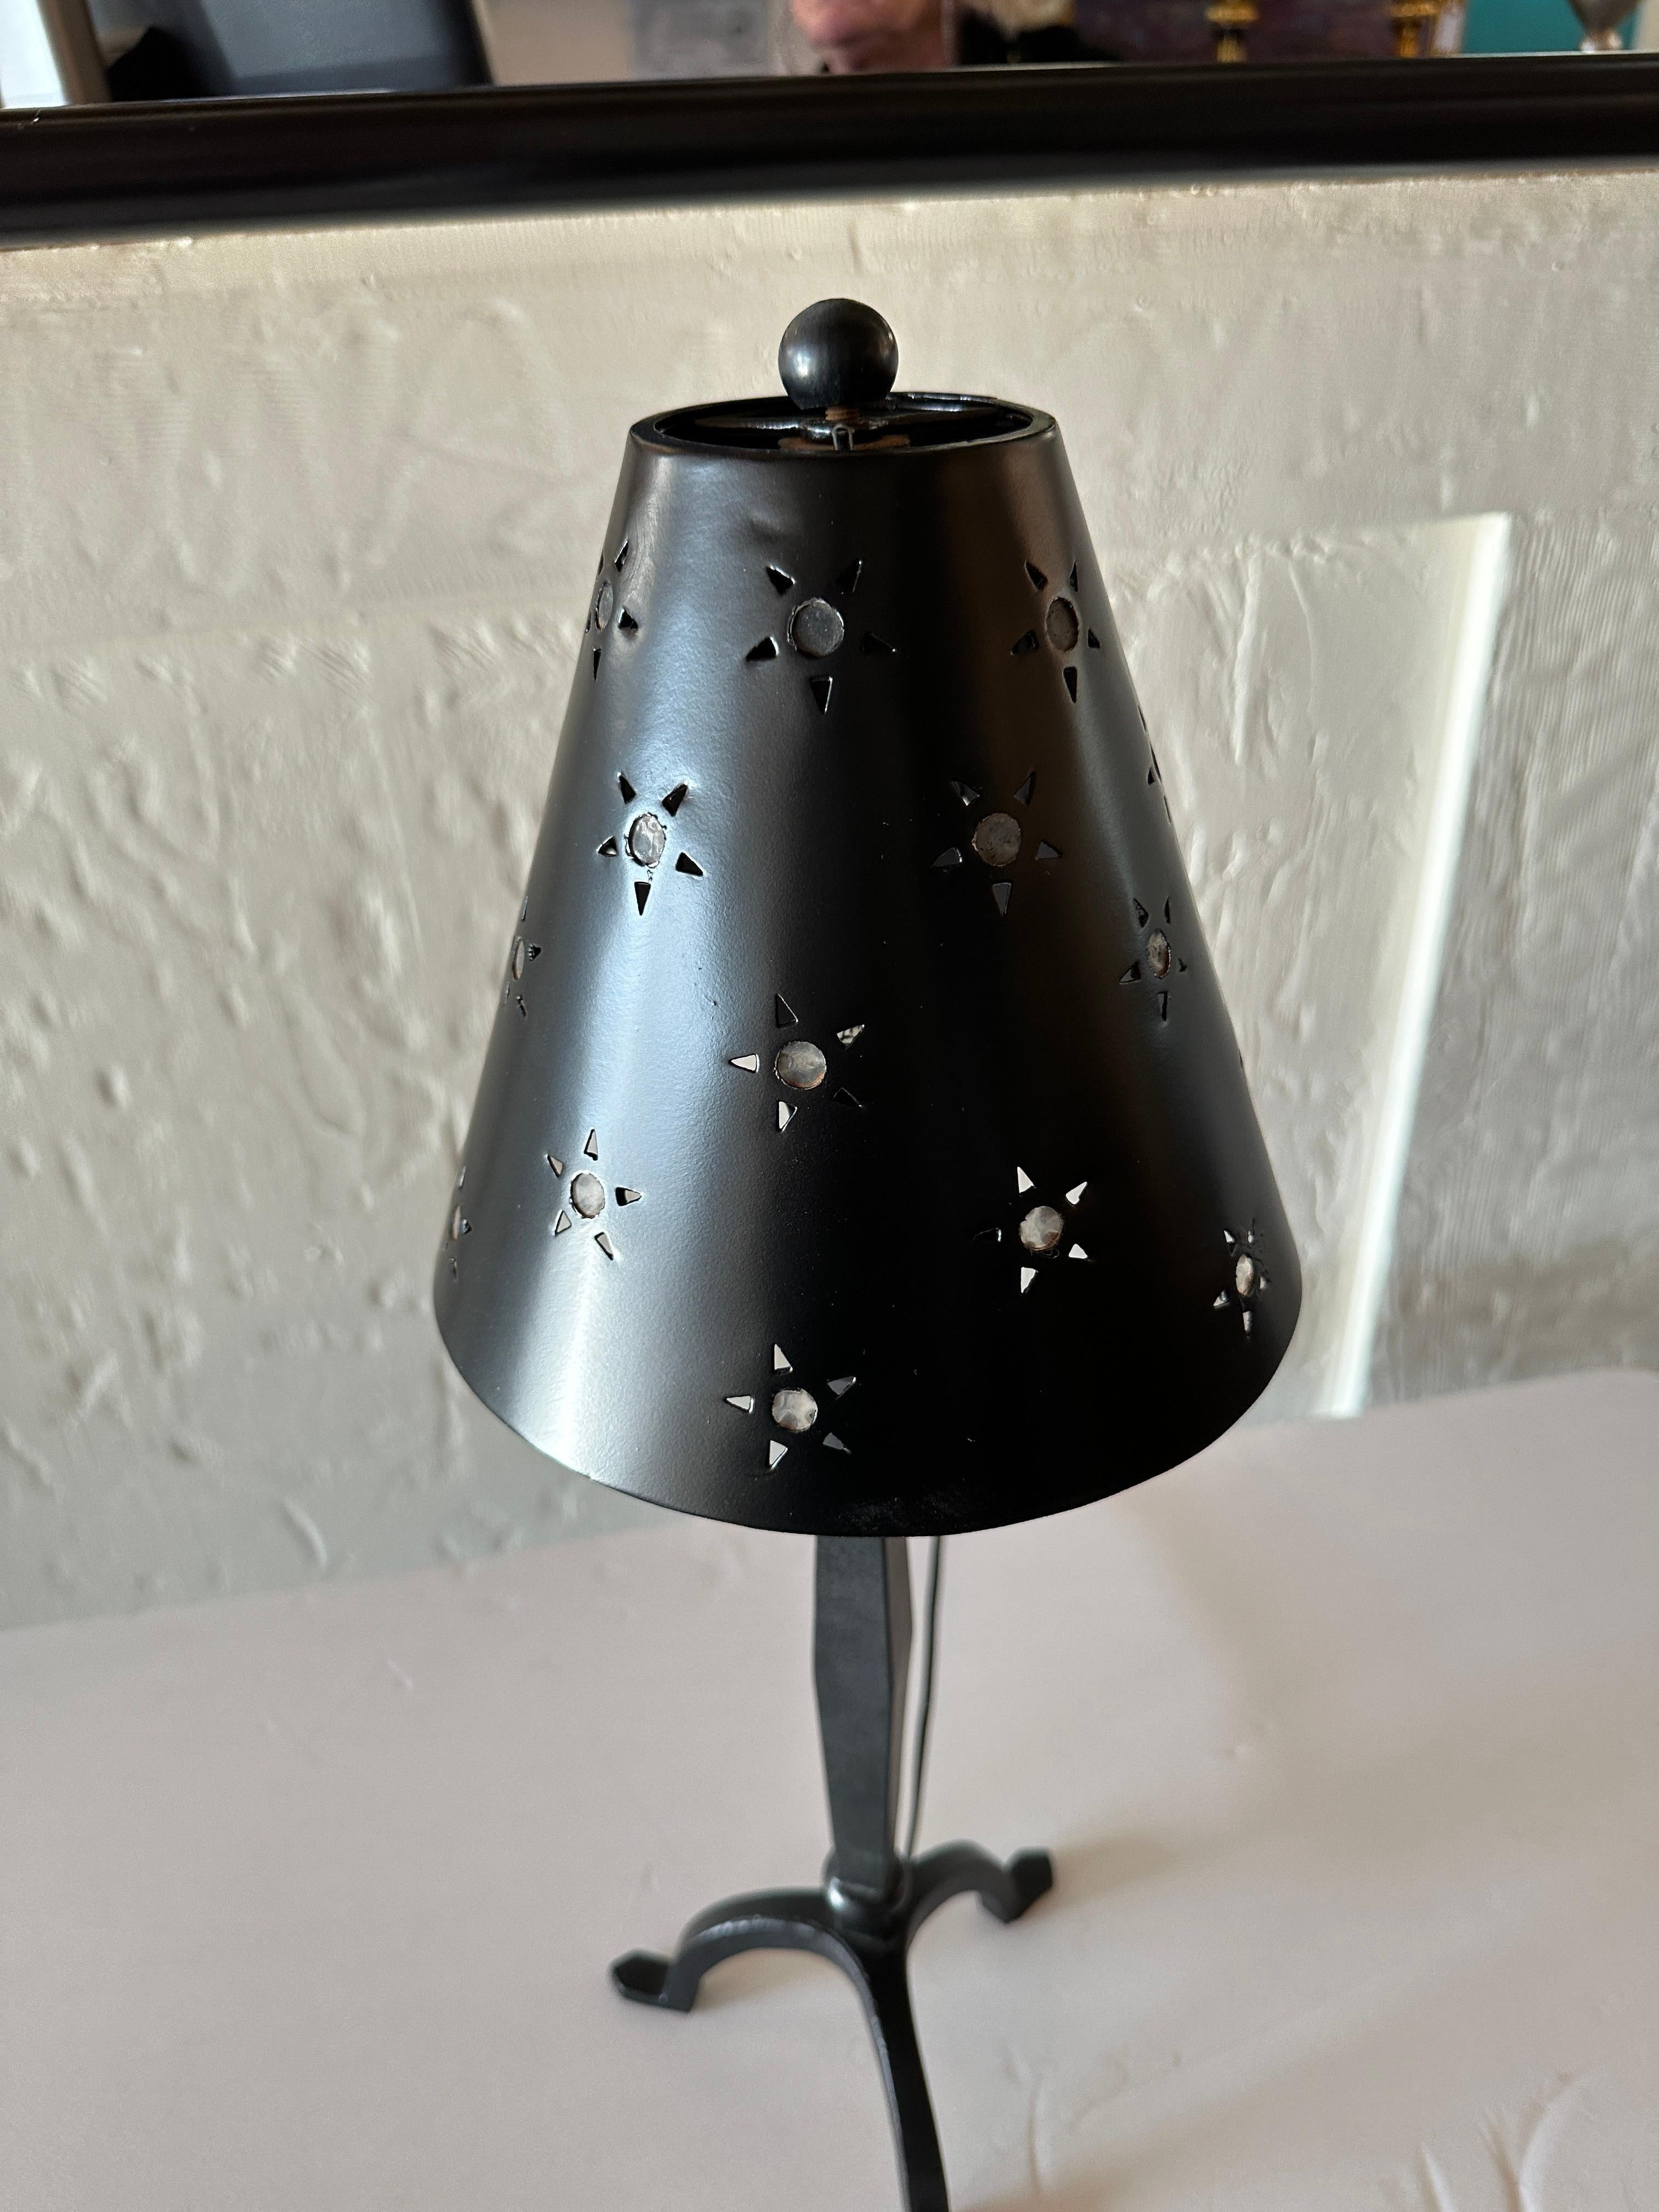 Diese Mini-Tischleuchte hat einen eleganten schwarzen Sockel mit drei anmutig geschwungenen Beinen in der gleichen flachen schwarzen Ausführung wie der Lampenkörper und der Schirm.
Der Schirm weist ein einzigartiges Muster mit hohlen Sternen auf,